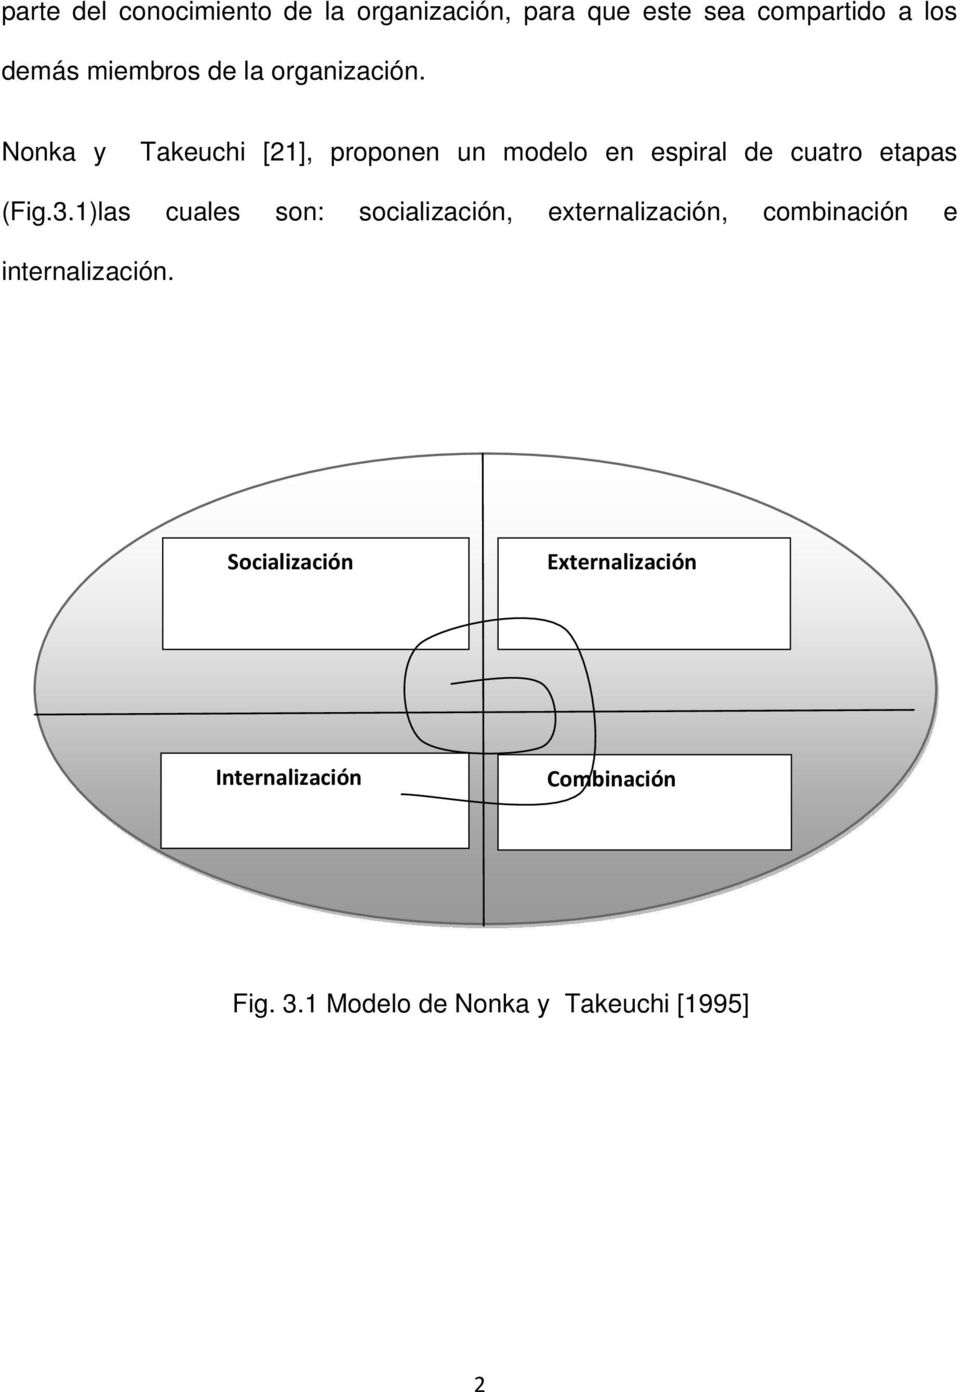 Nonka y Takeuchi [21], proponen un modelo en espiral de cuatro etapas (Fig.3.